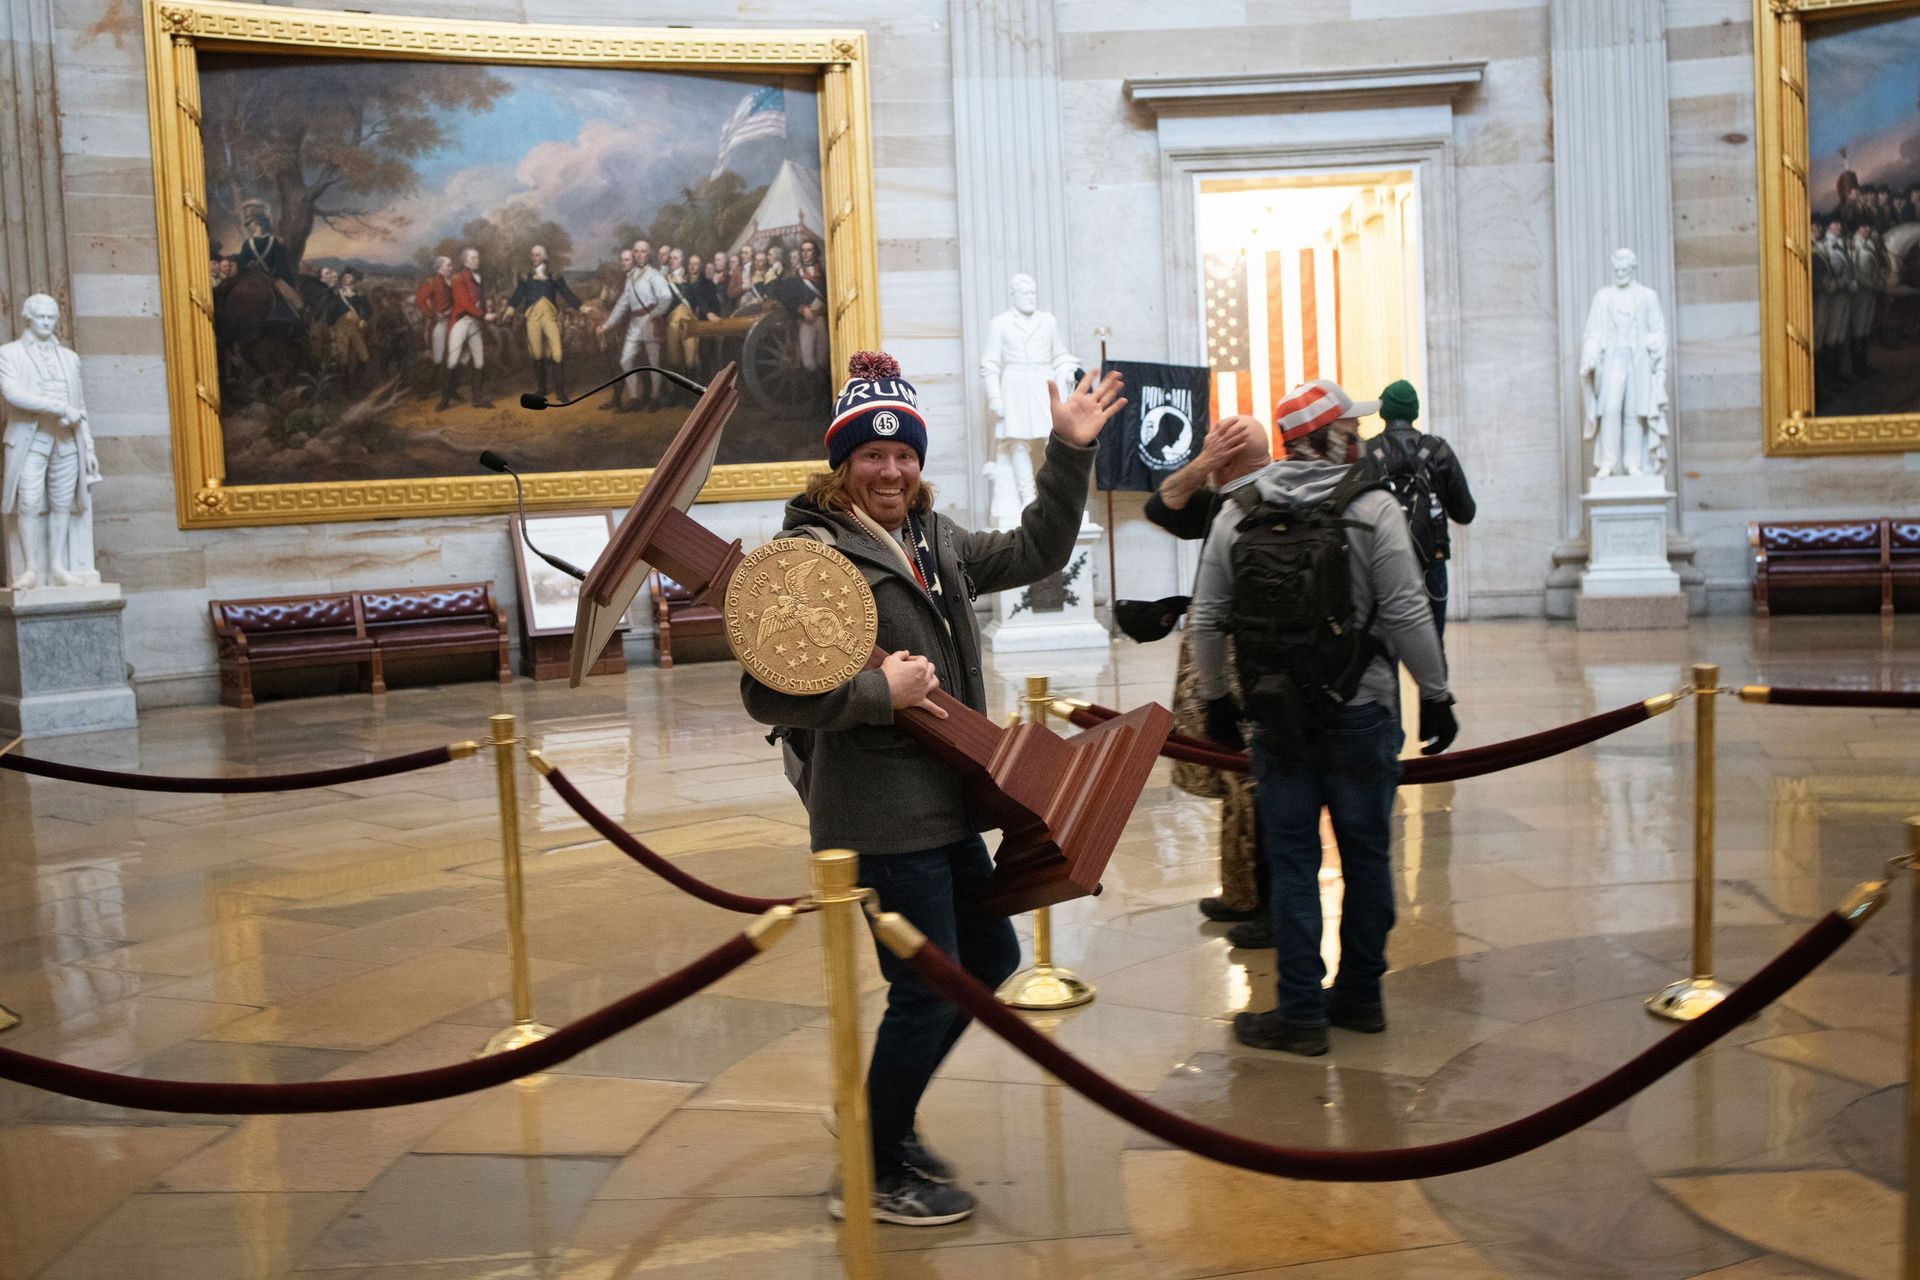 Émission spéciale USA : des manifestants envahissent le Capitole